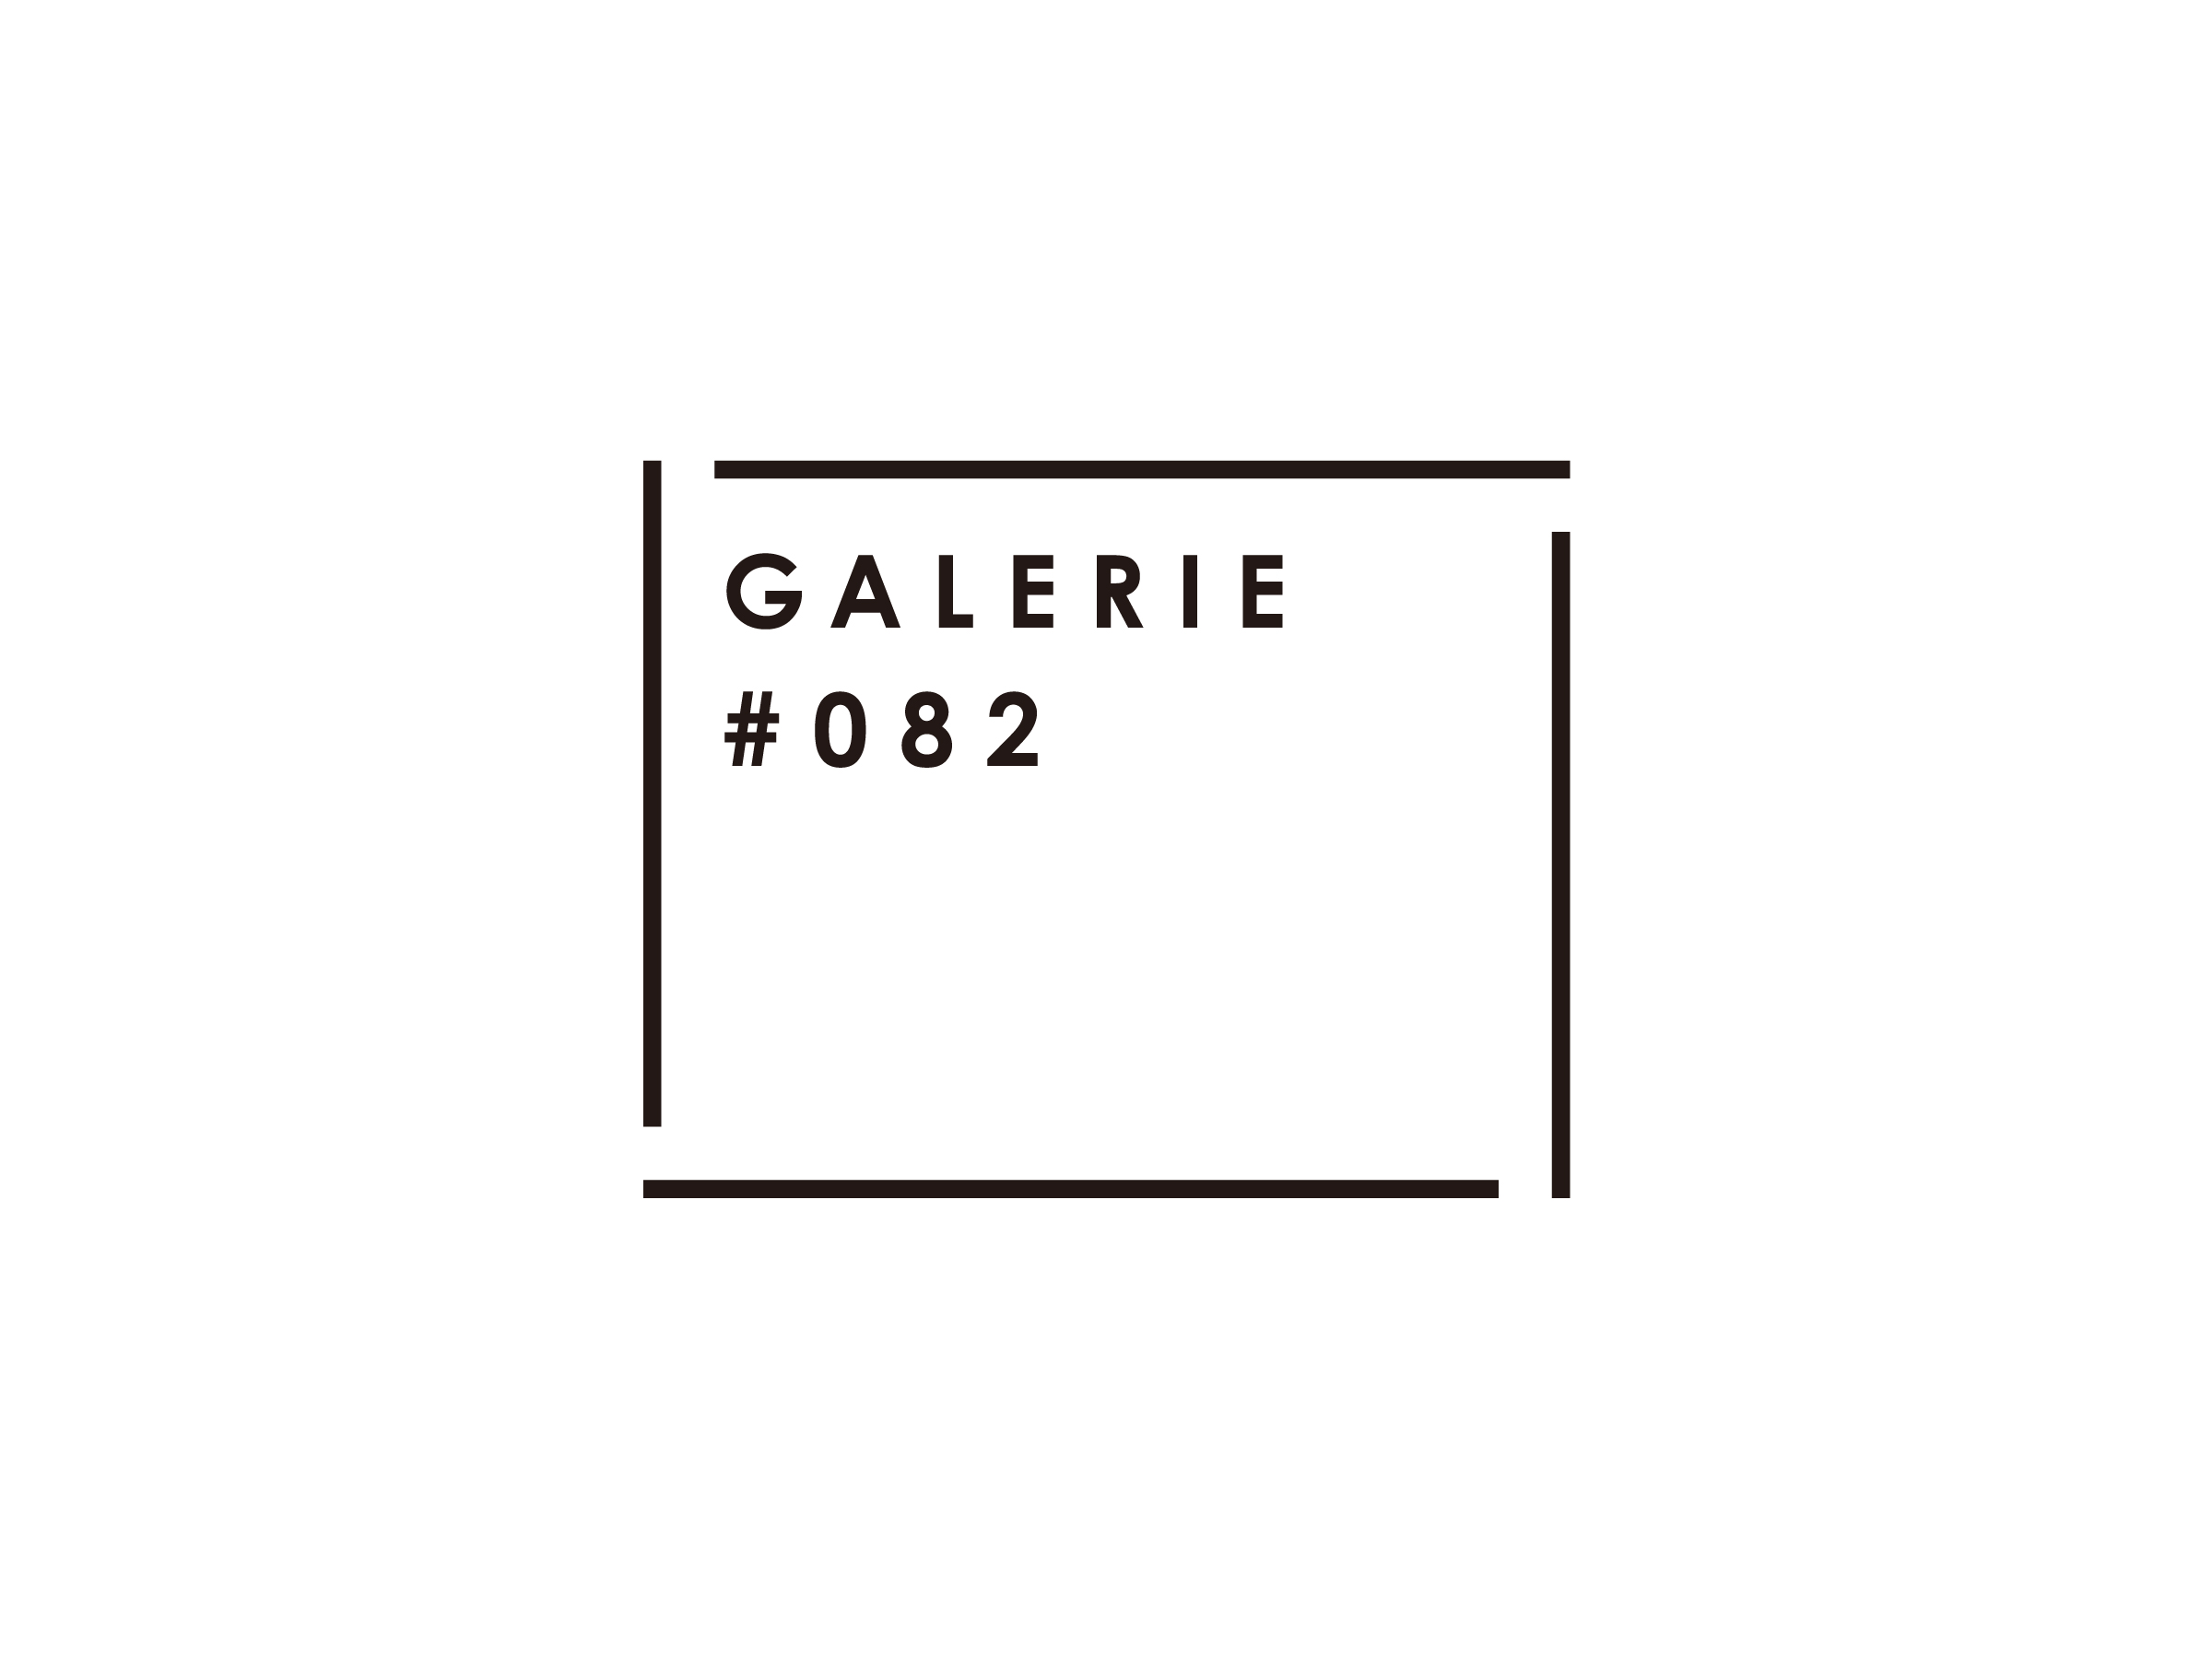 GALERIE #082 チョコレート <br>ブランディング パッケージデザイン 